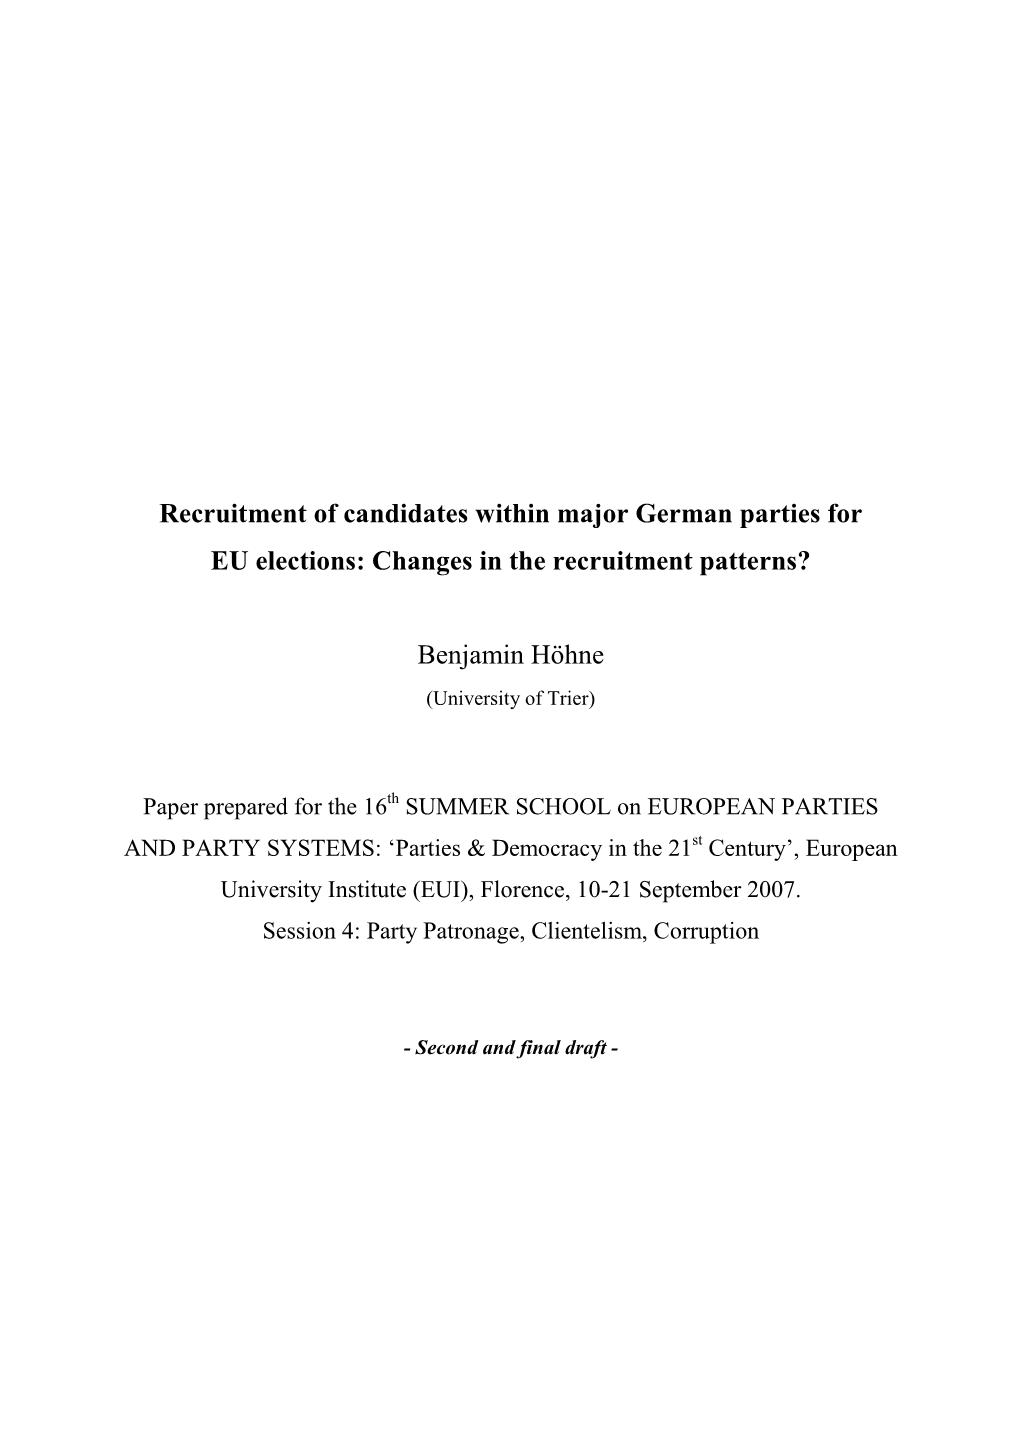 Paper Hoehne Recruitment EP & Europeanisation Sec Draft